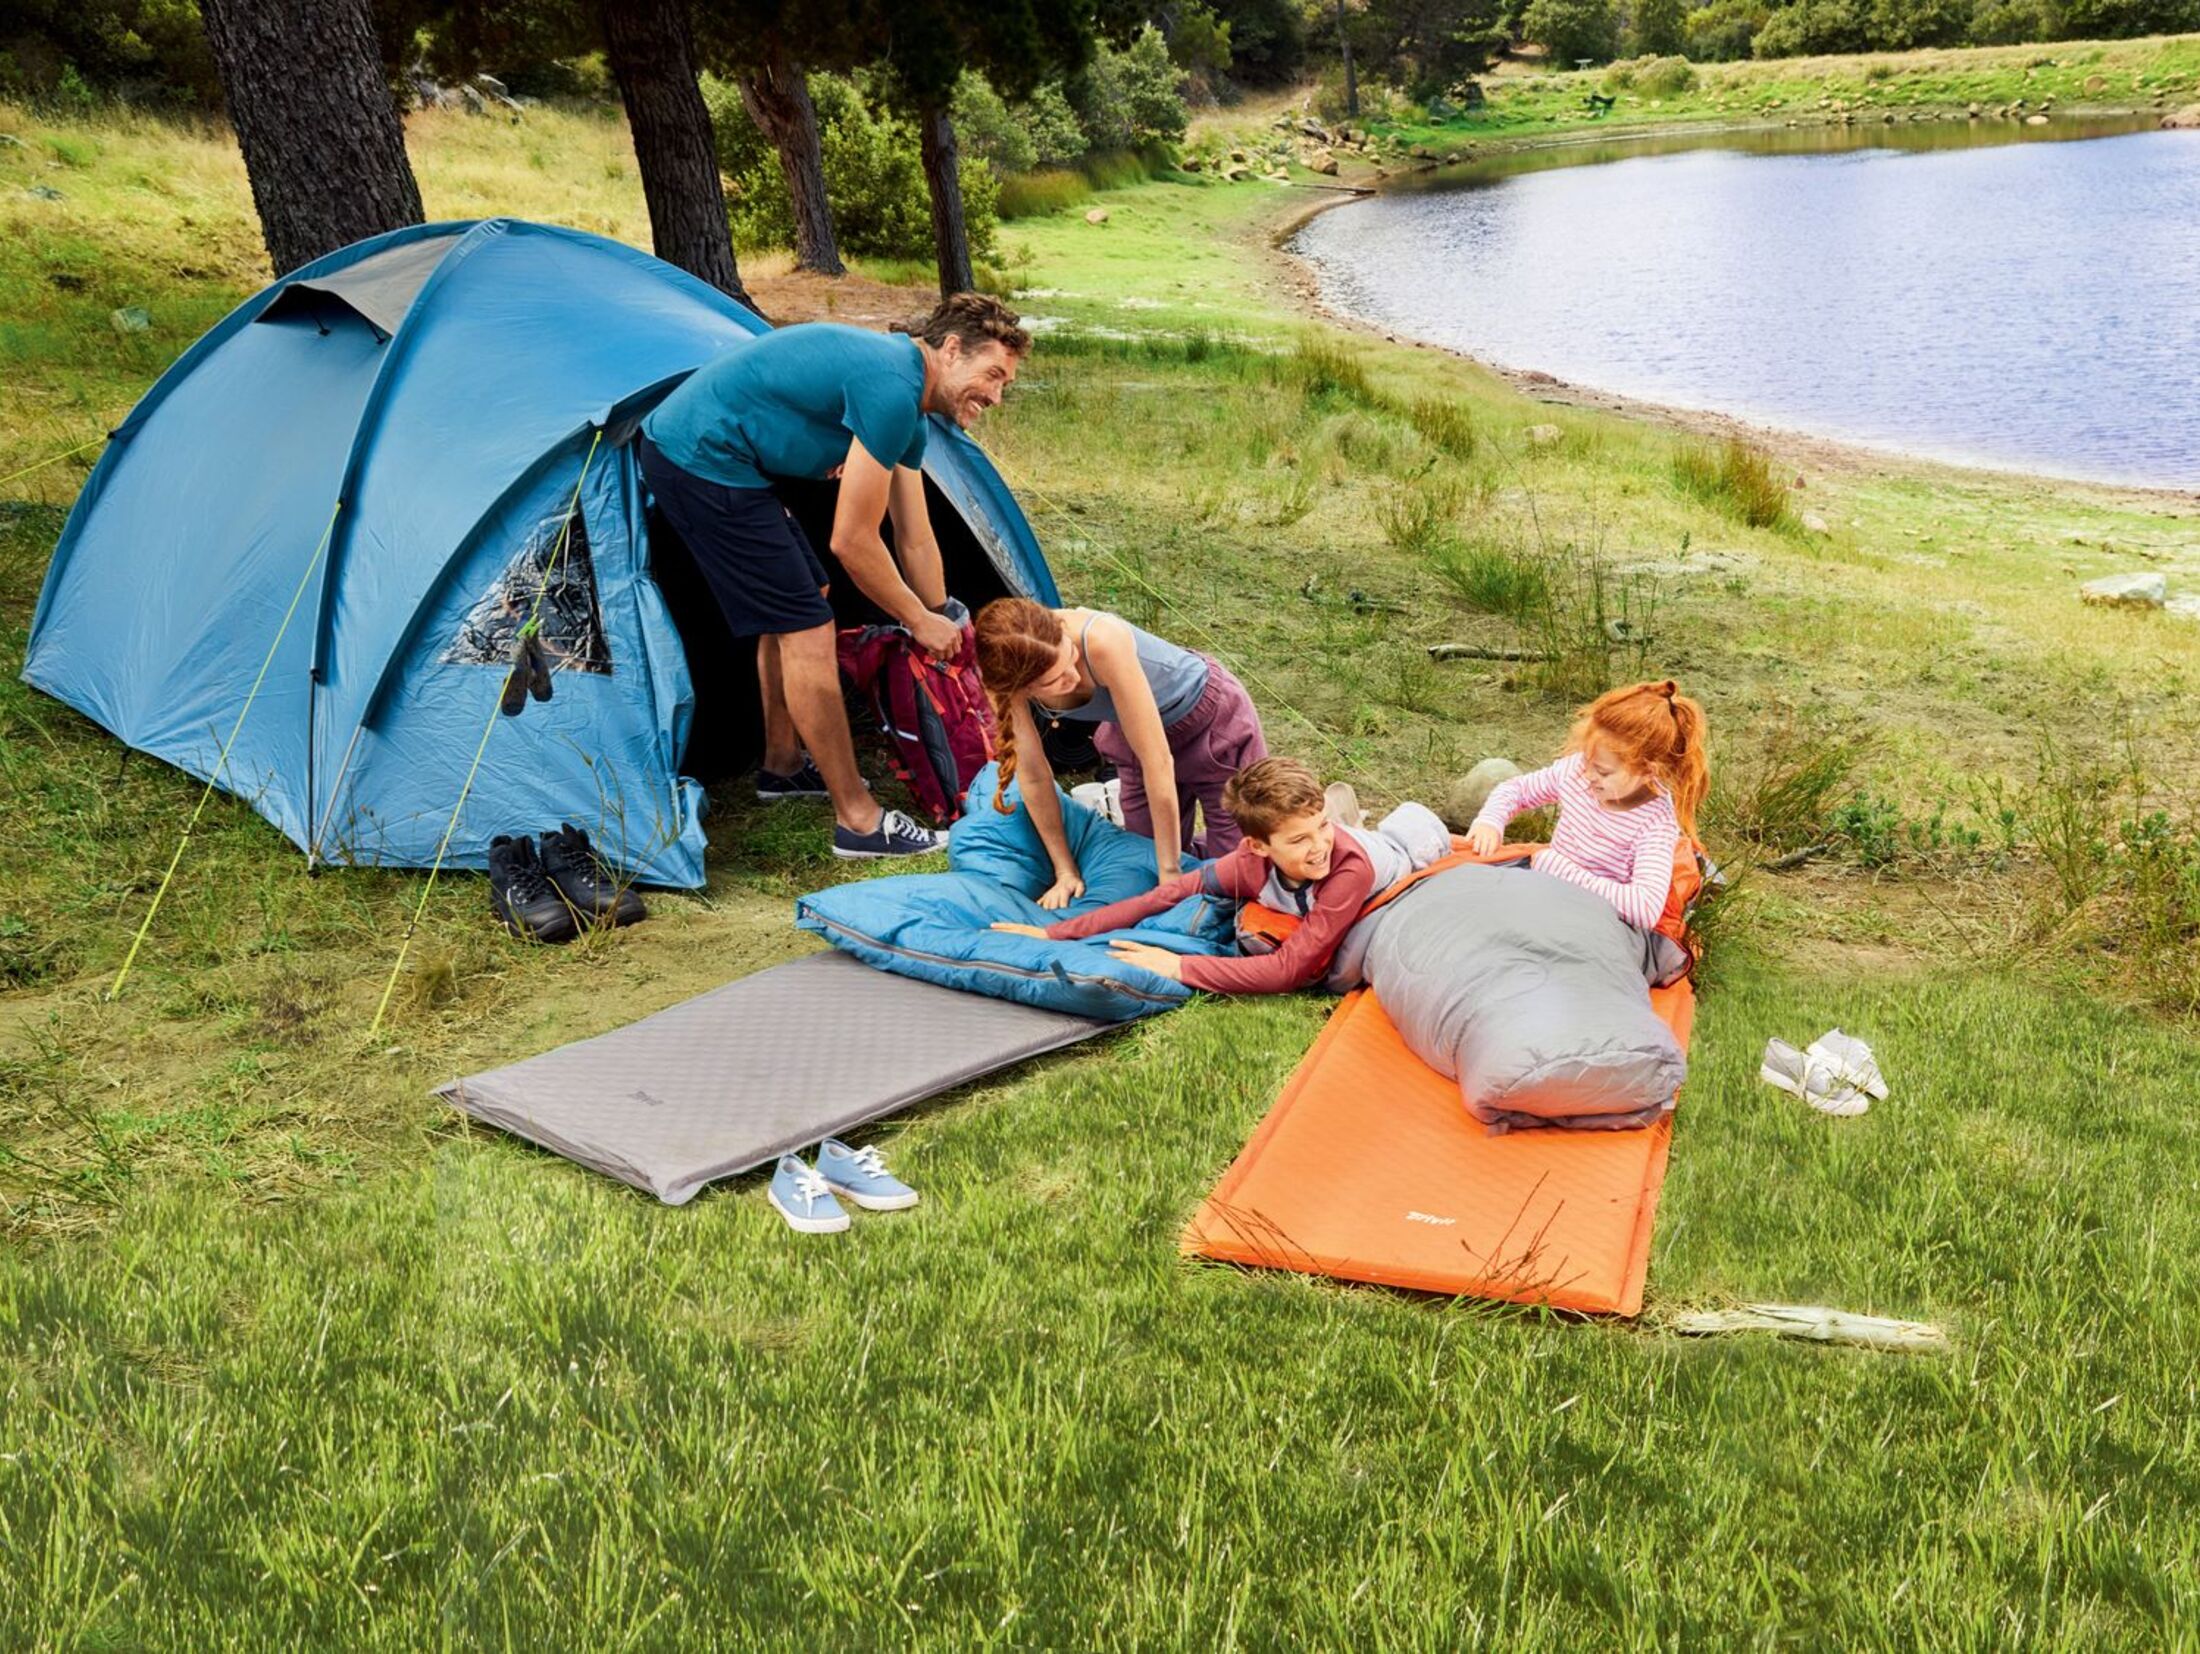 Billigzelte im Test: Was kann Discounter-Camping-Ausrüstung?